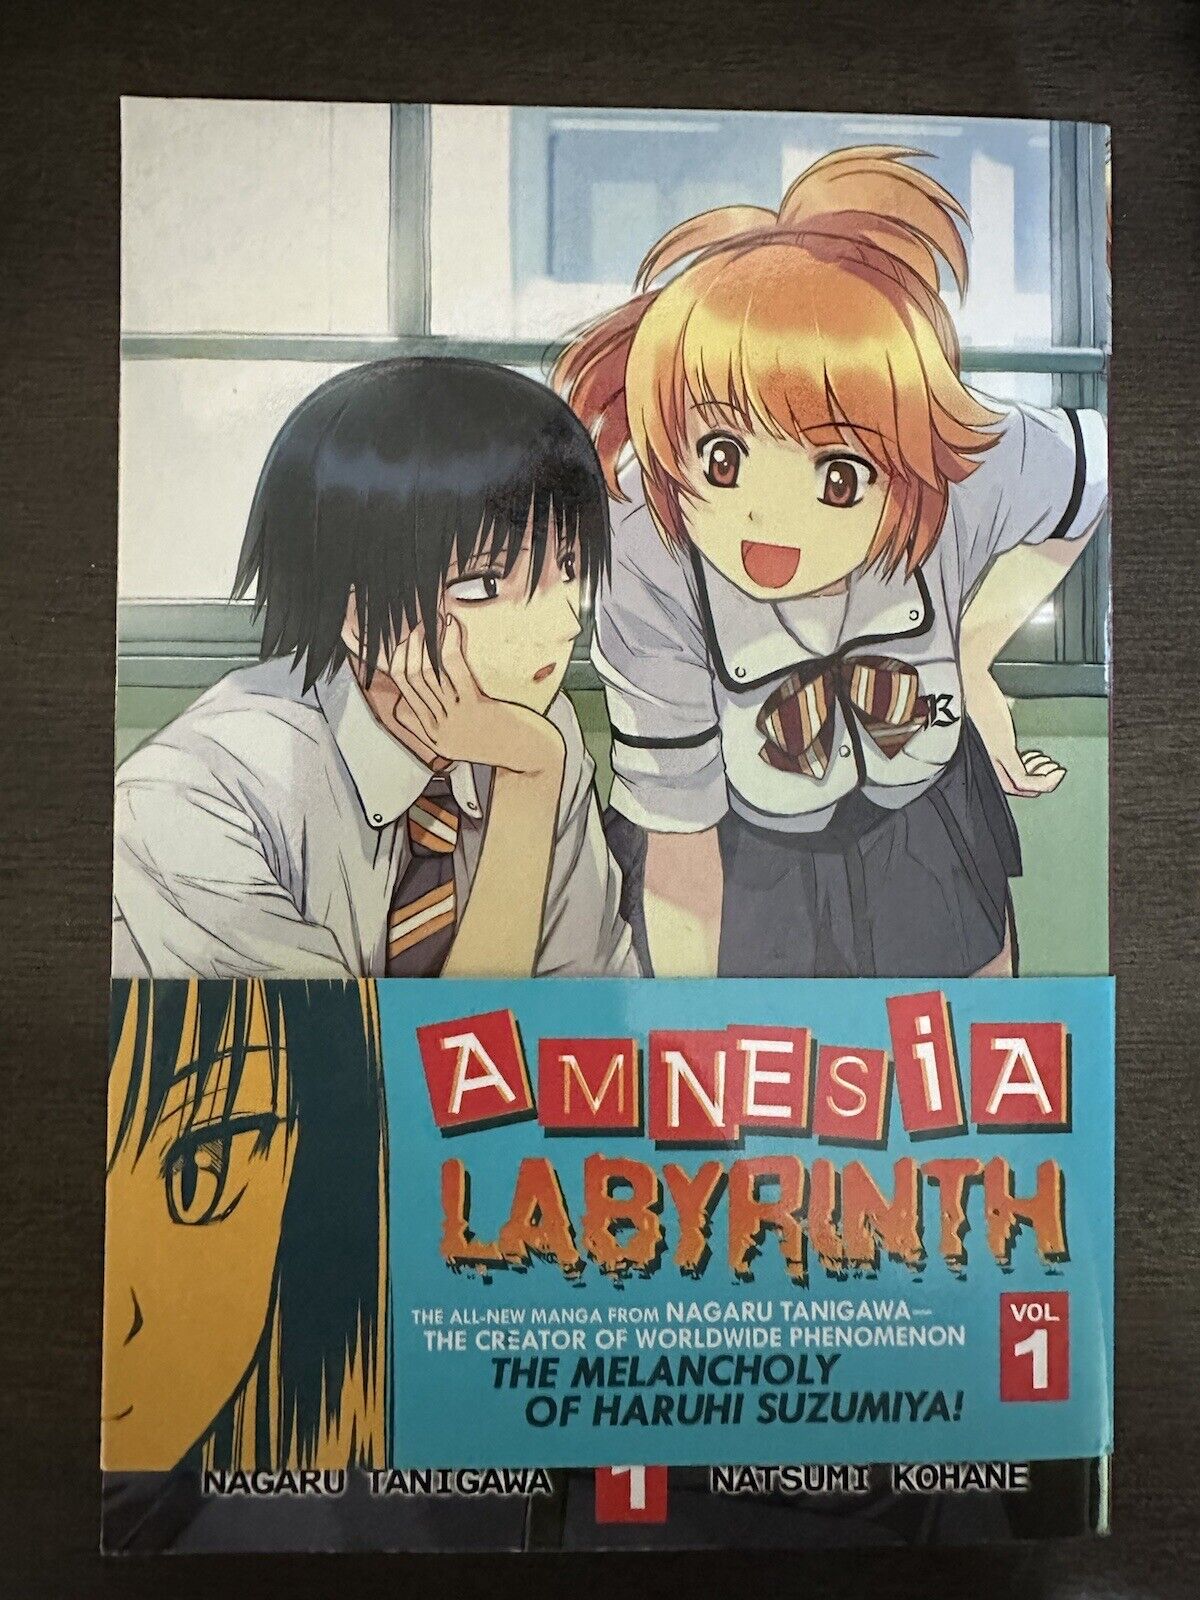 Amnesia Labyrinth Vol 1 & 2 Manga English Seven Seas Lot